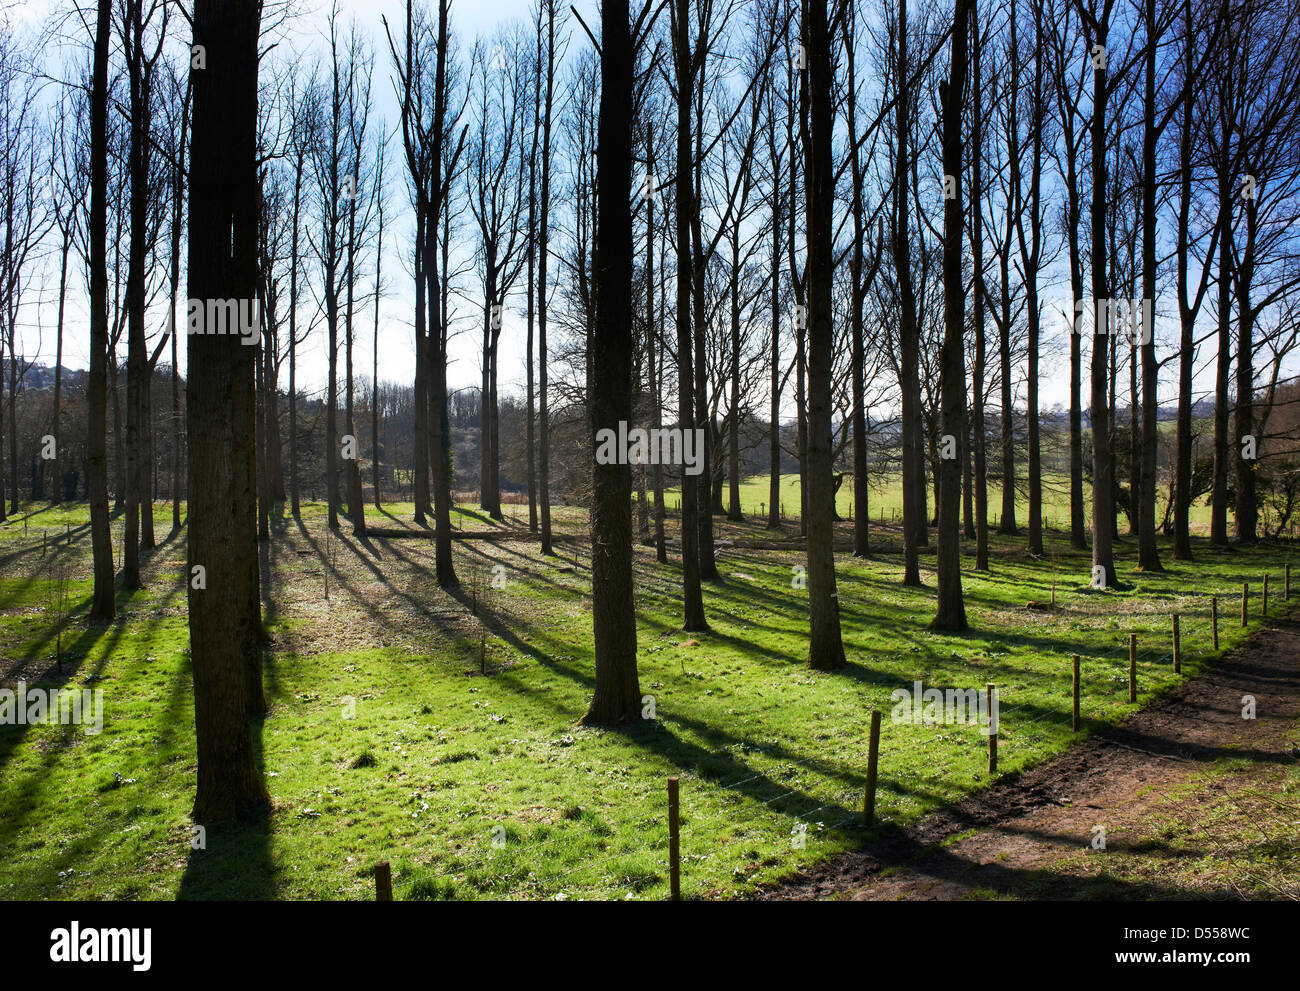 Une scène avec les arbres forestiers silhouetté contre un ciel d'hiver ensoleillée créant de grandes ombres sur le sol et de sentiers. Banque D'Images